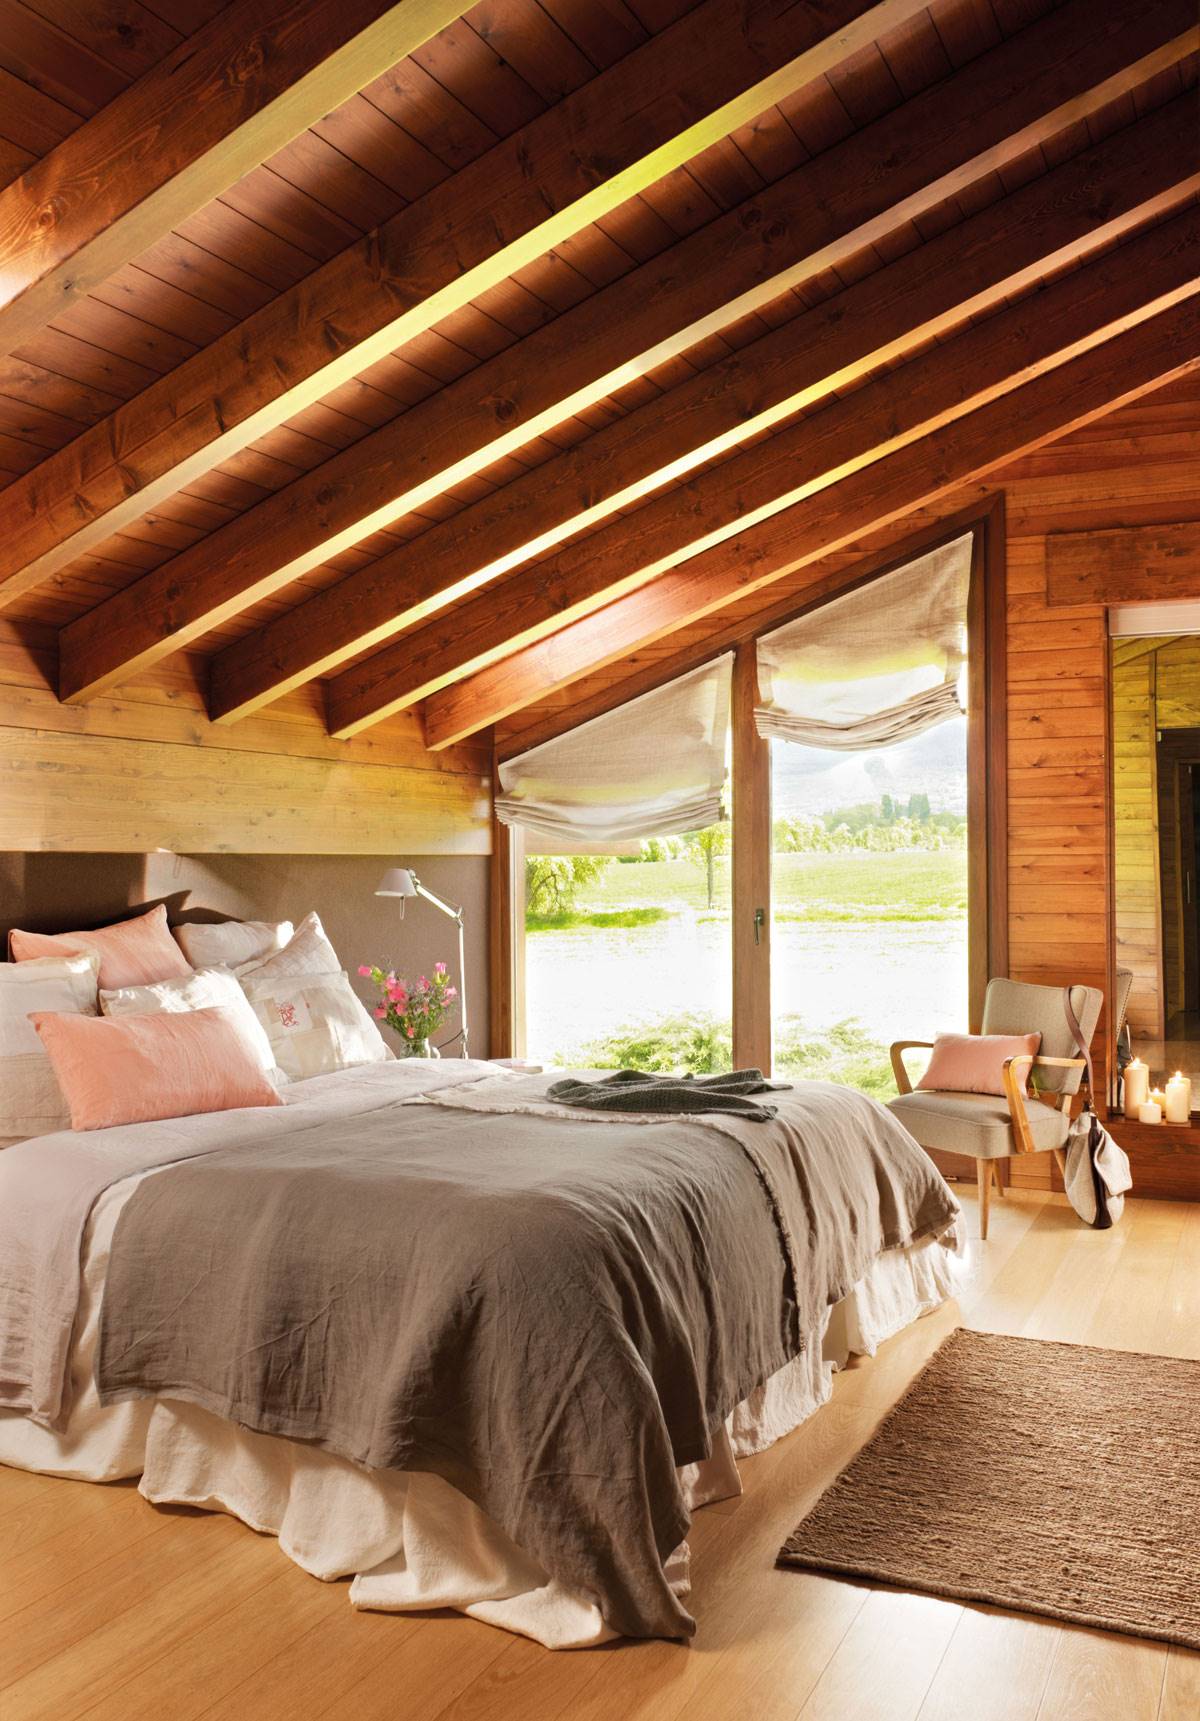 Dormitorio principal rústico con techo abuhardillado con vigas de madera, estores, butaca y velas-347186